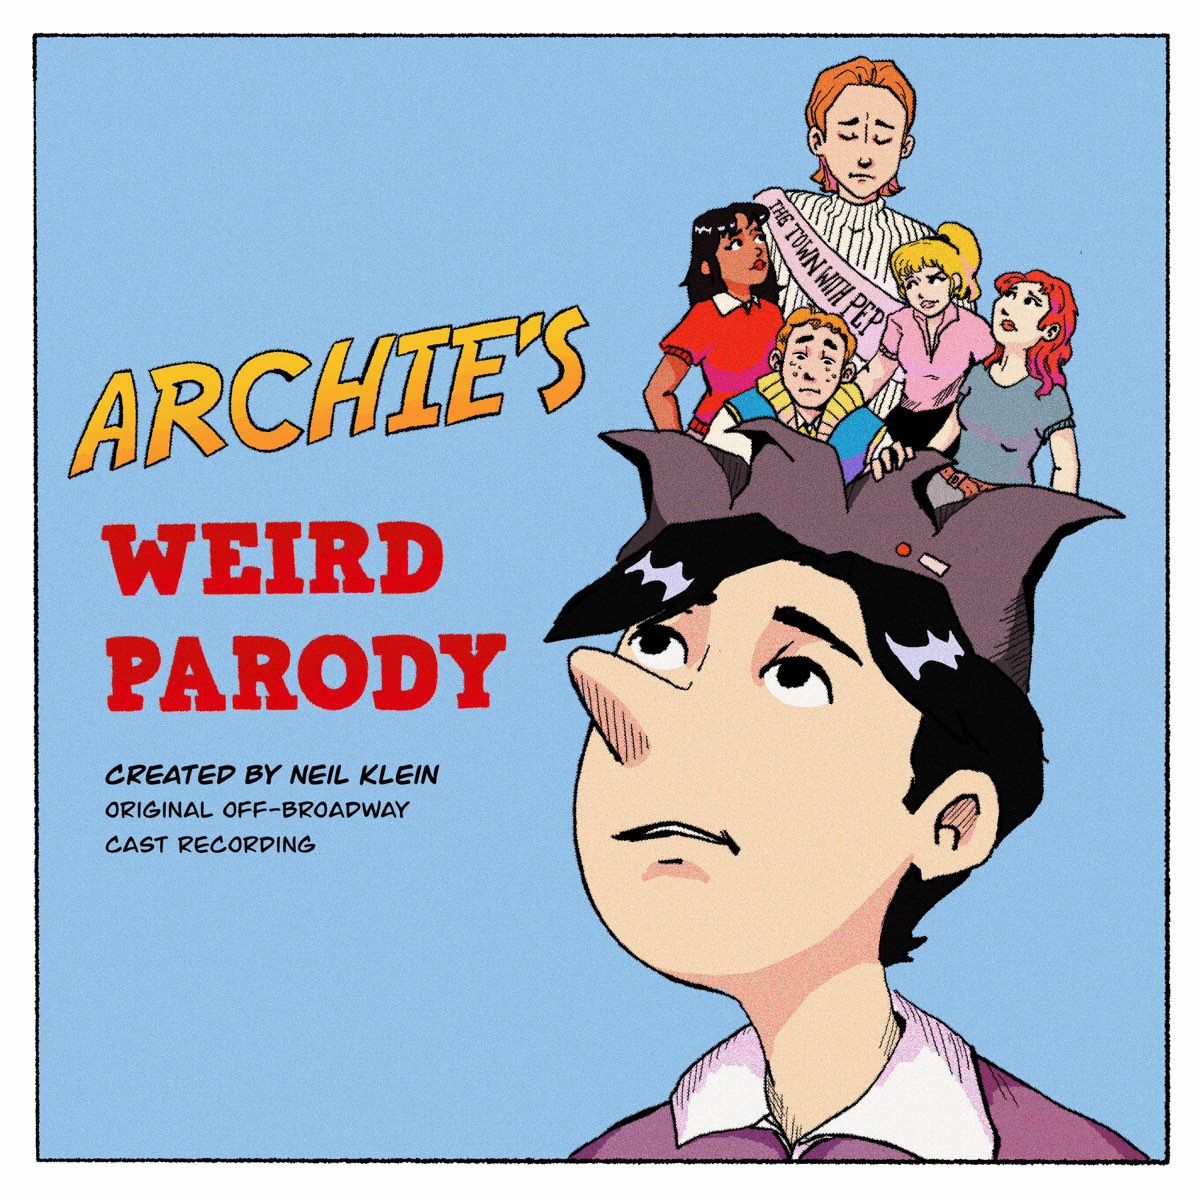 Archies weird parody